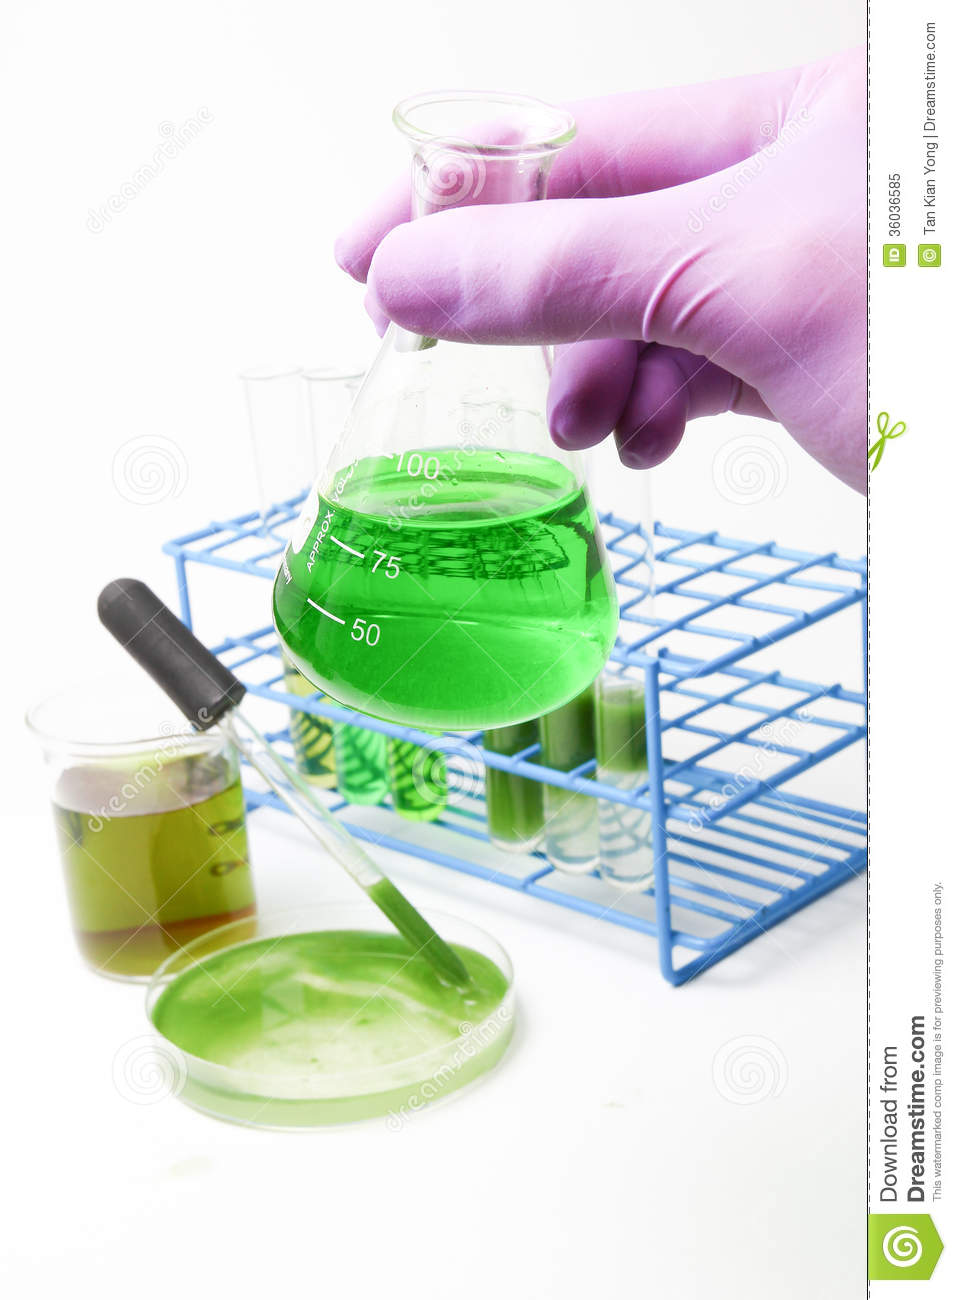 Algae Biofuel Technology Royalty Free Stock Photo   Image  36036585